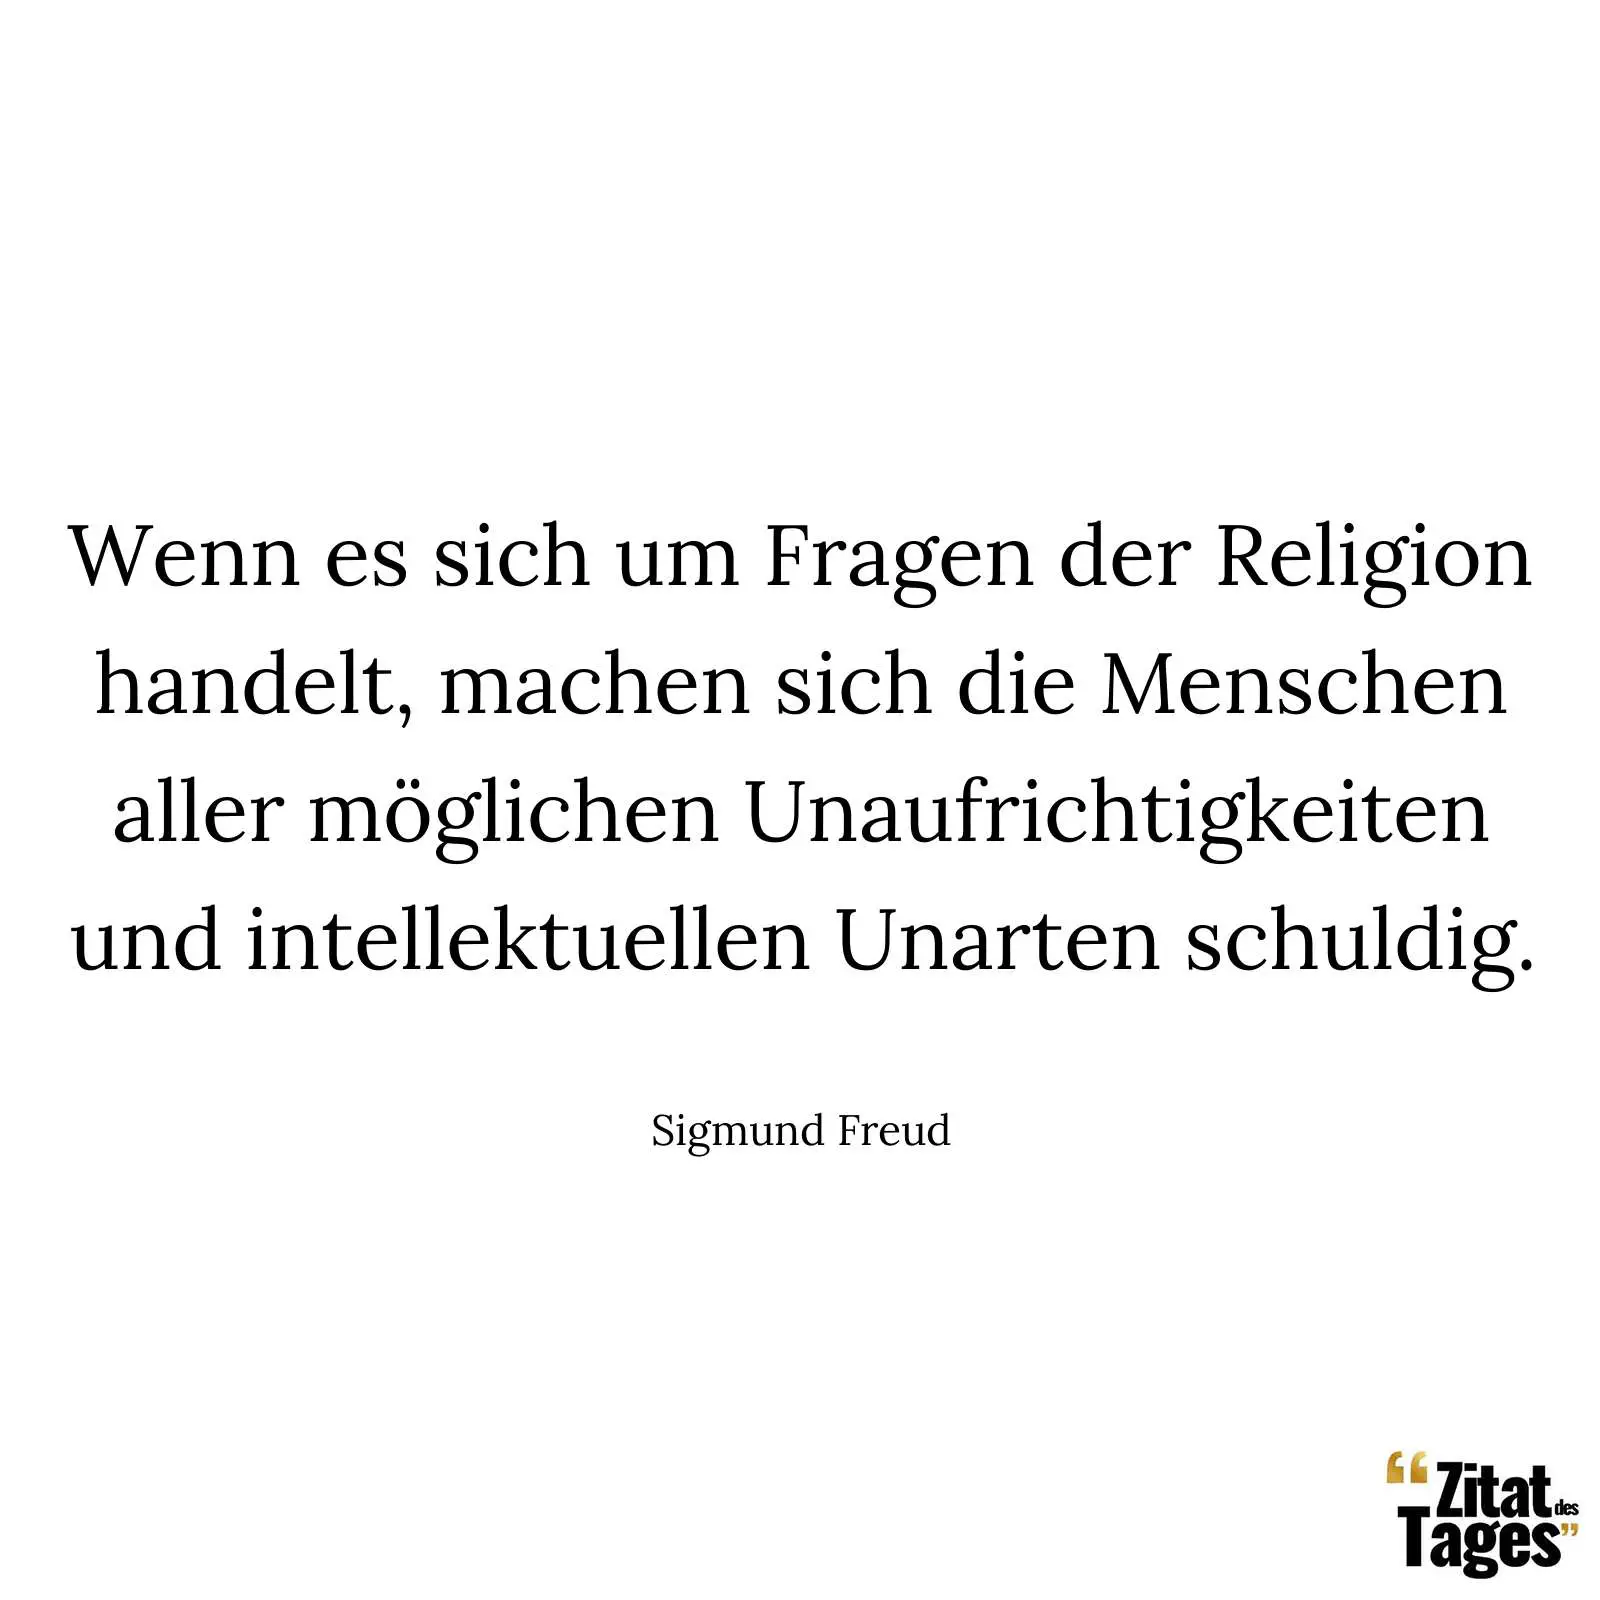 Wenn es sich um Fragen der Religion handelt, machen sich die Menschen aller möglichen Unaufrichtigkeiten und intellektuellen Unarten schuldig. - Sigmund Freud